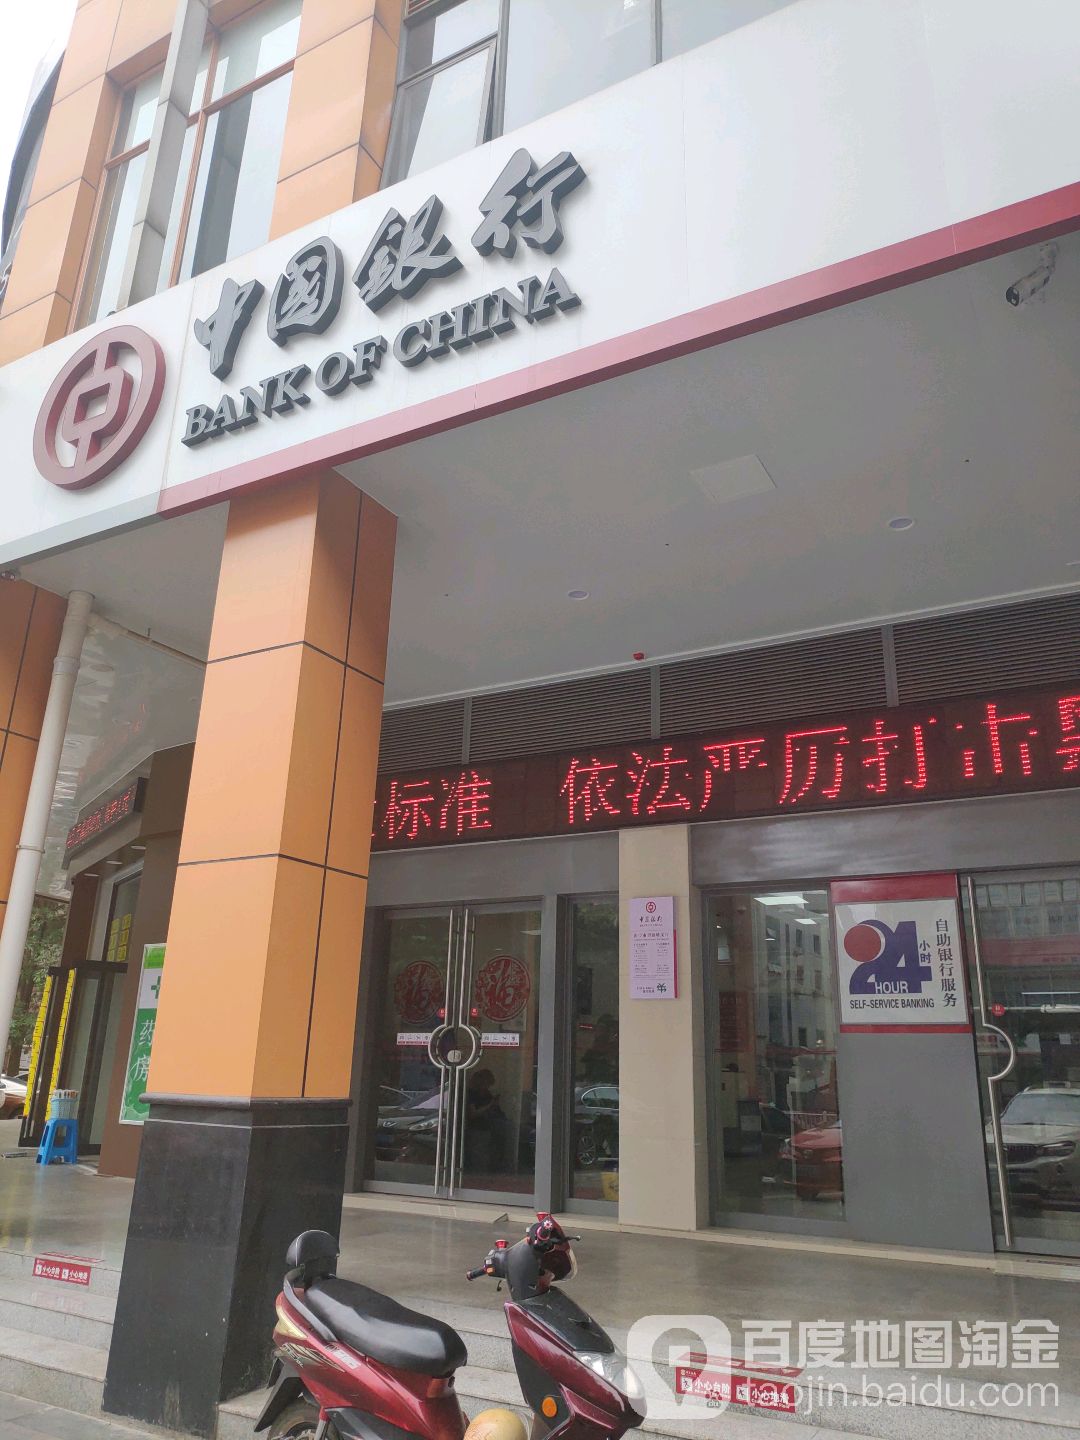 中國銀行24小時自助銀行(望仙坡支行)